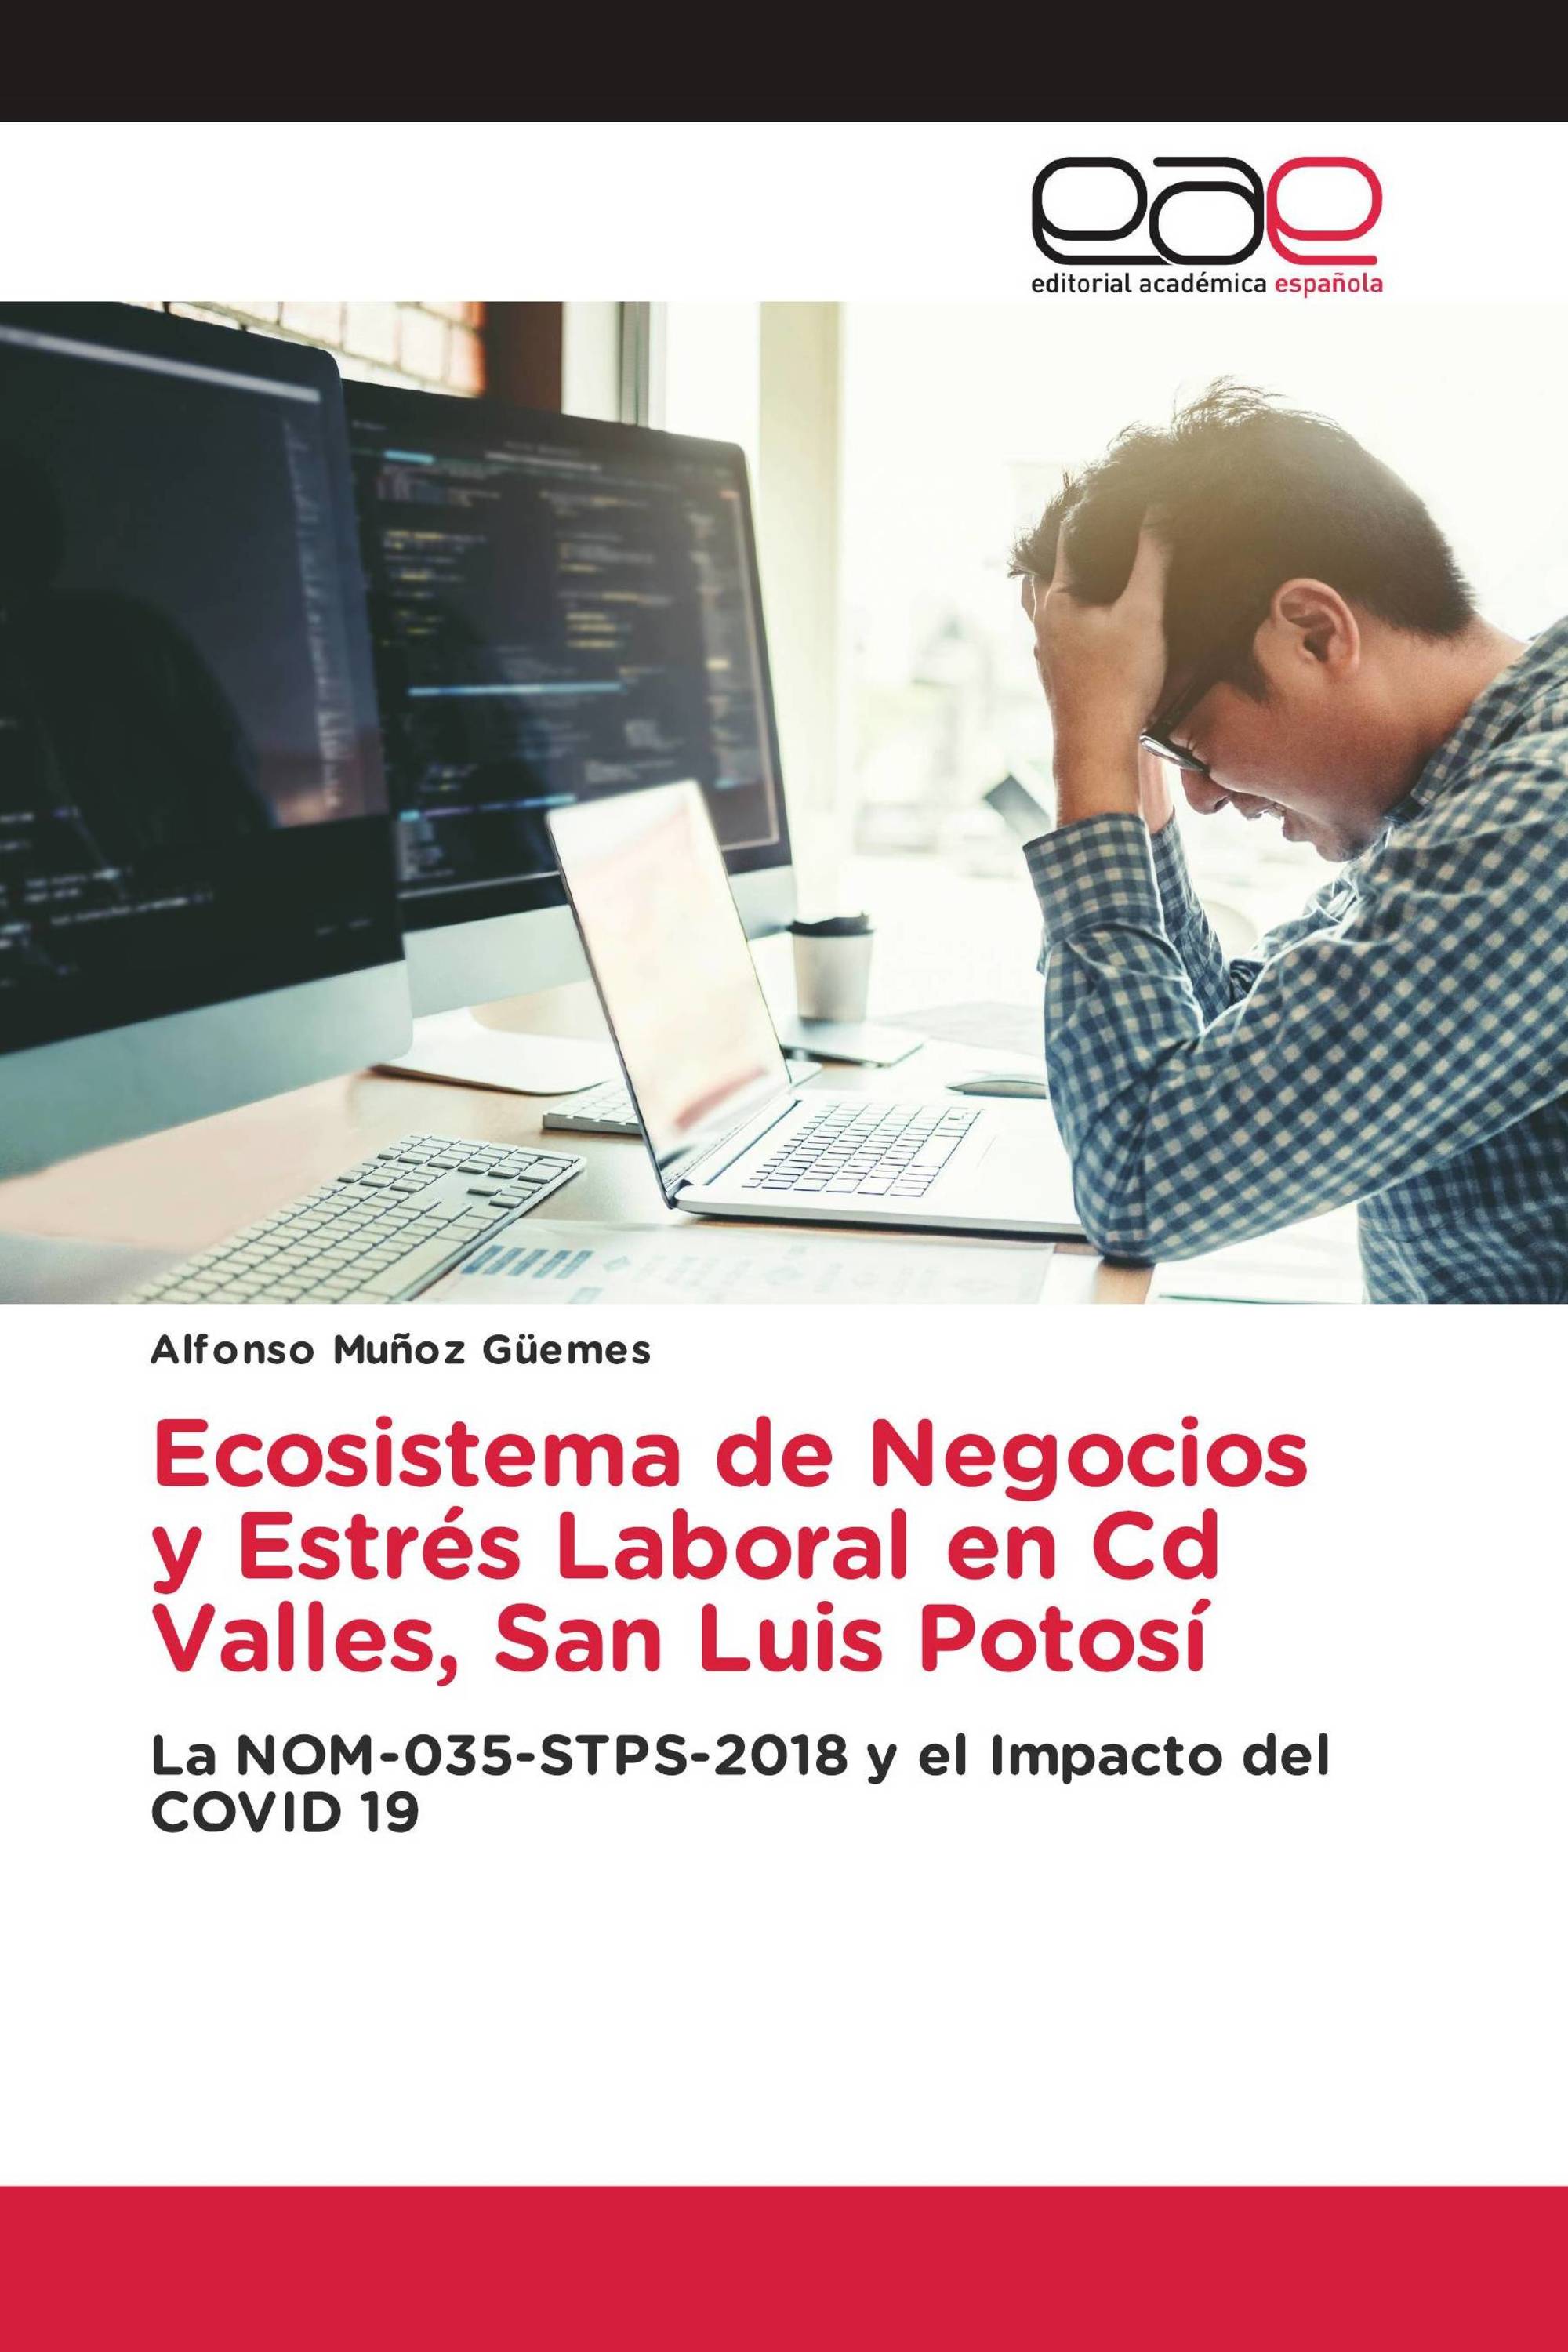 Ecosistema de Negocios y Estrés Laboral en Cd Valles, San Luis Potosí